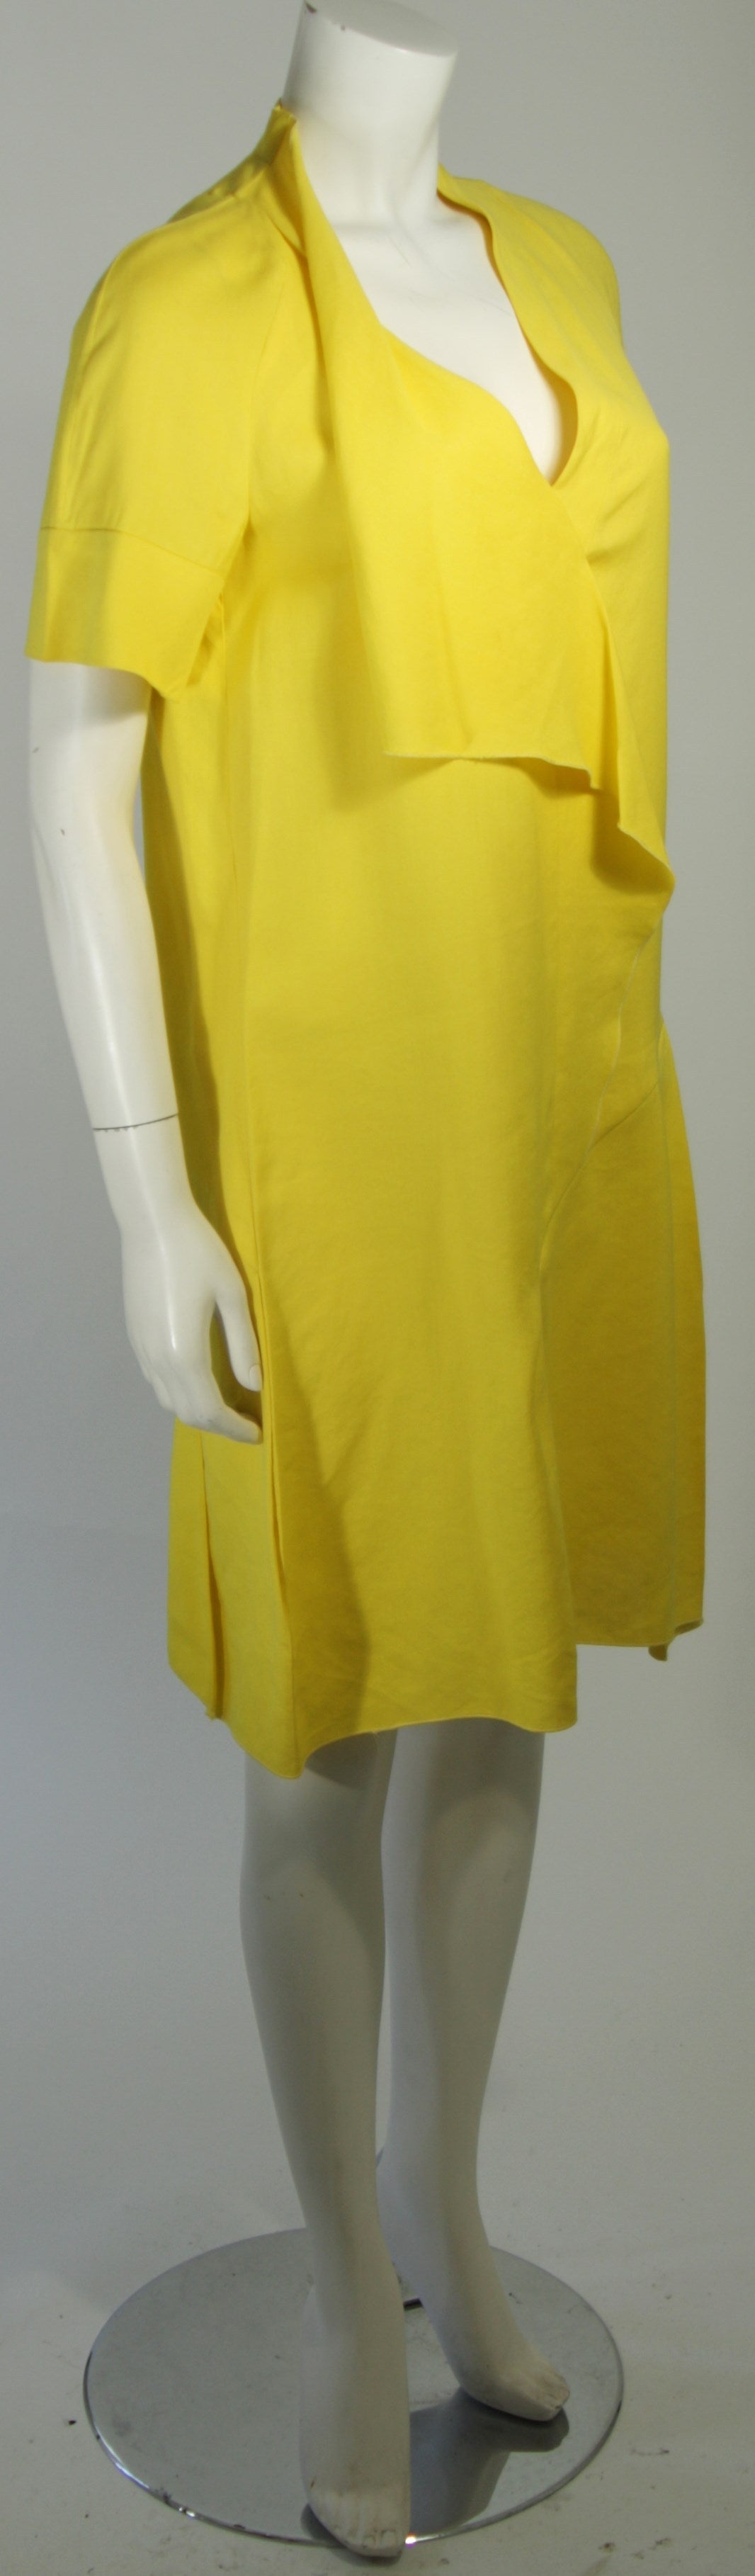 marni yellow dress